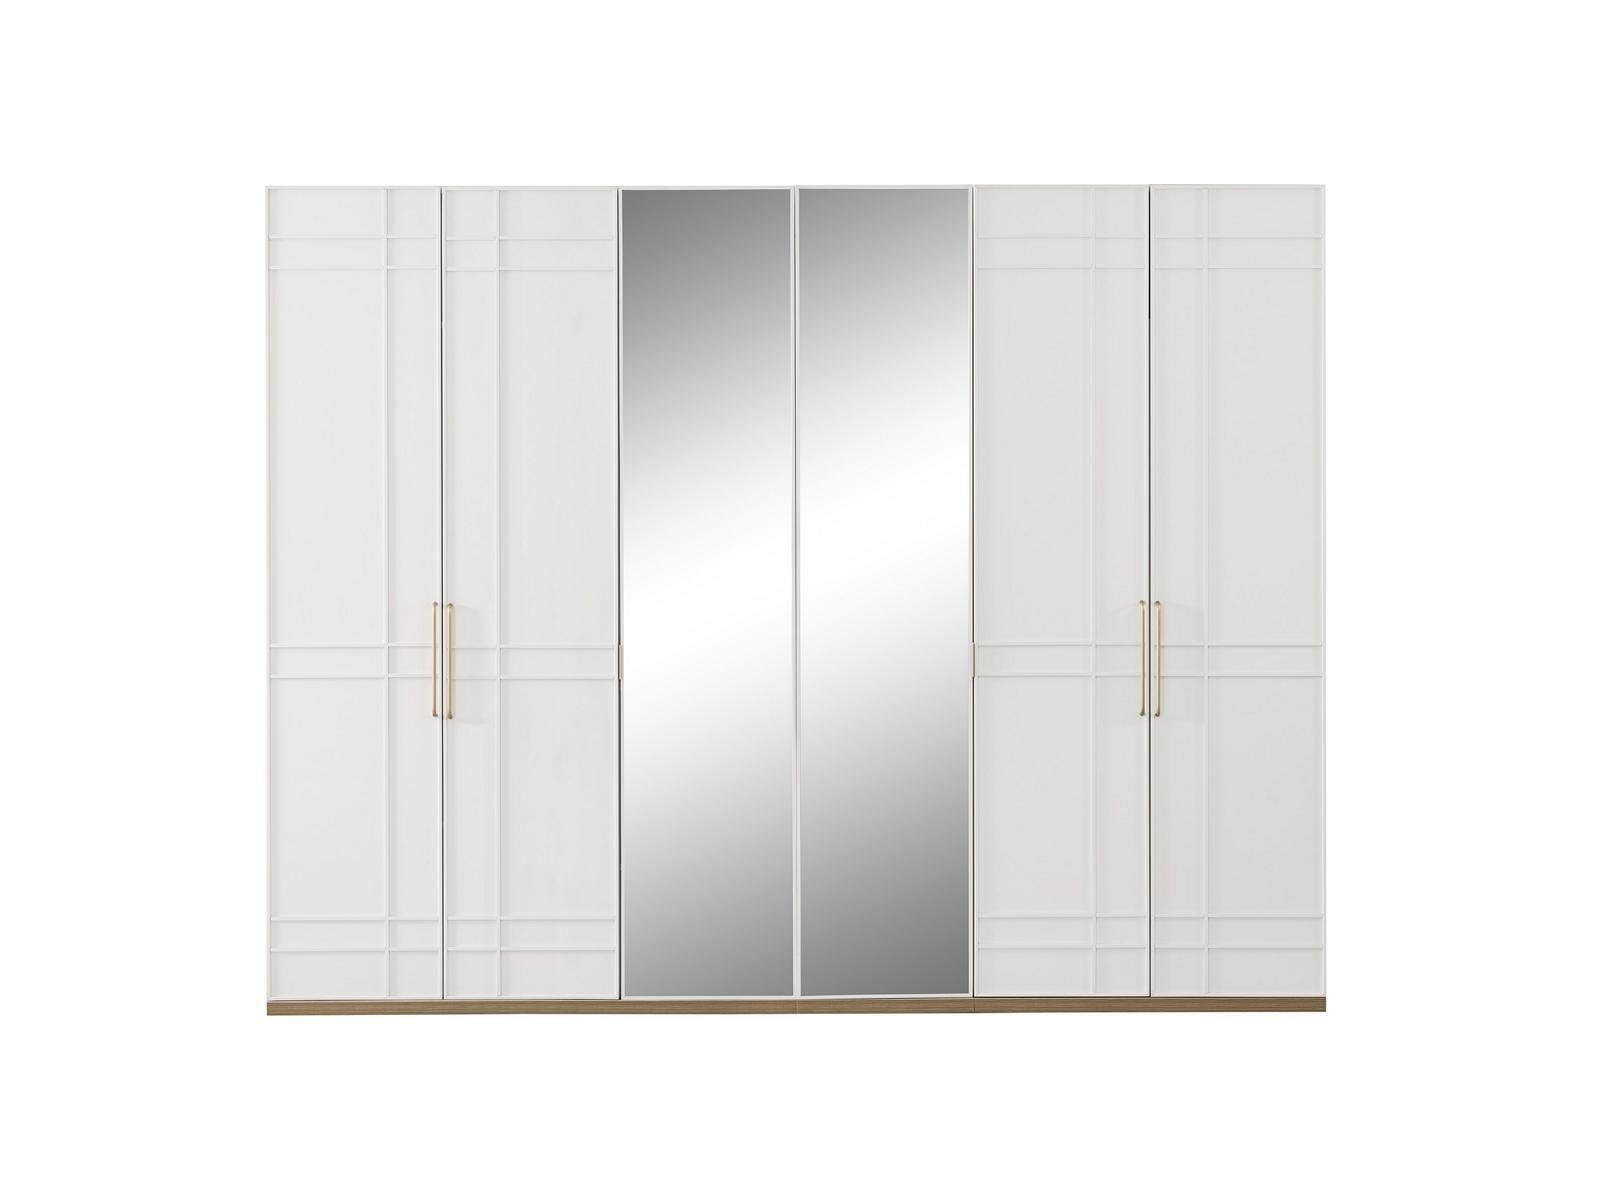 Europe JVmoebel Holz Kleiderschrank 6 Neu In Weiß Türen Schränke (Kleiderschrank) Kleiderschrank Spiegel Kleiderschränke Made